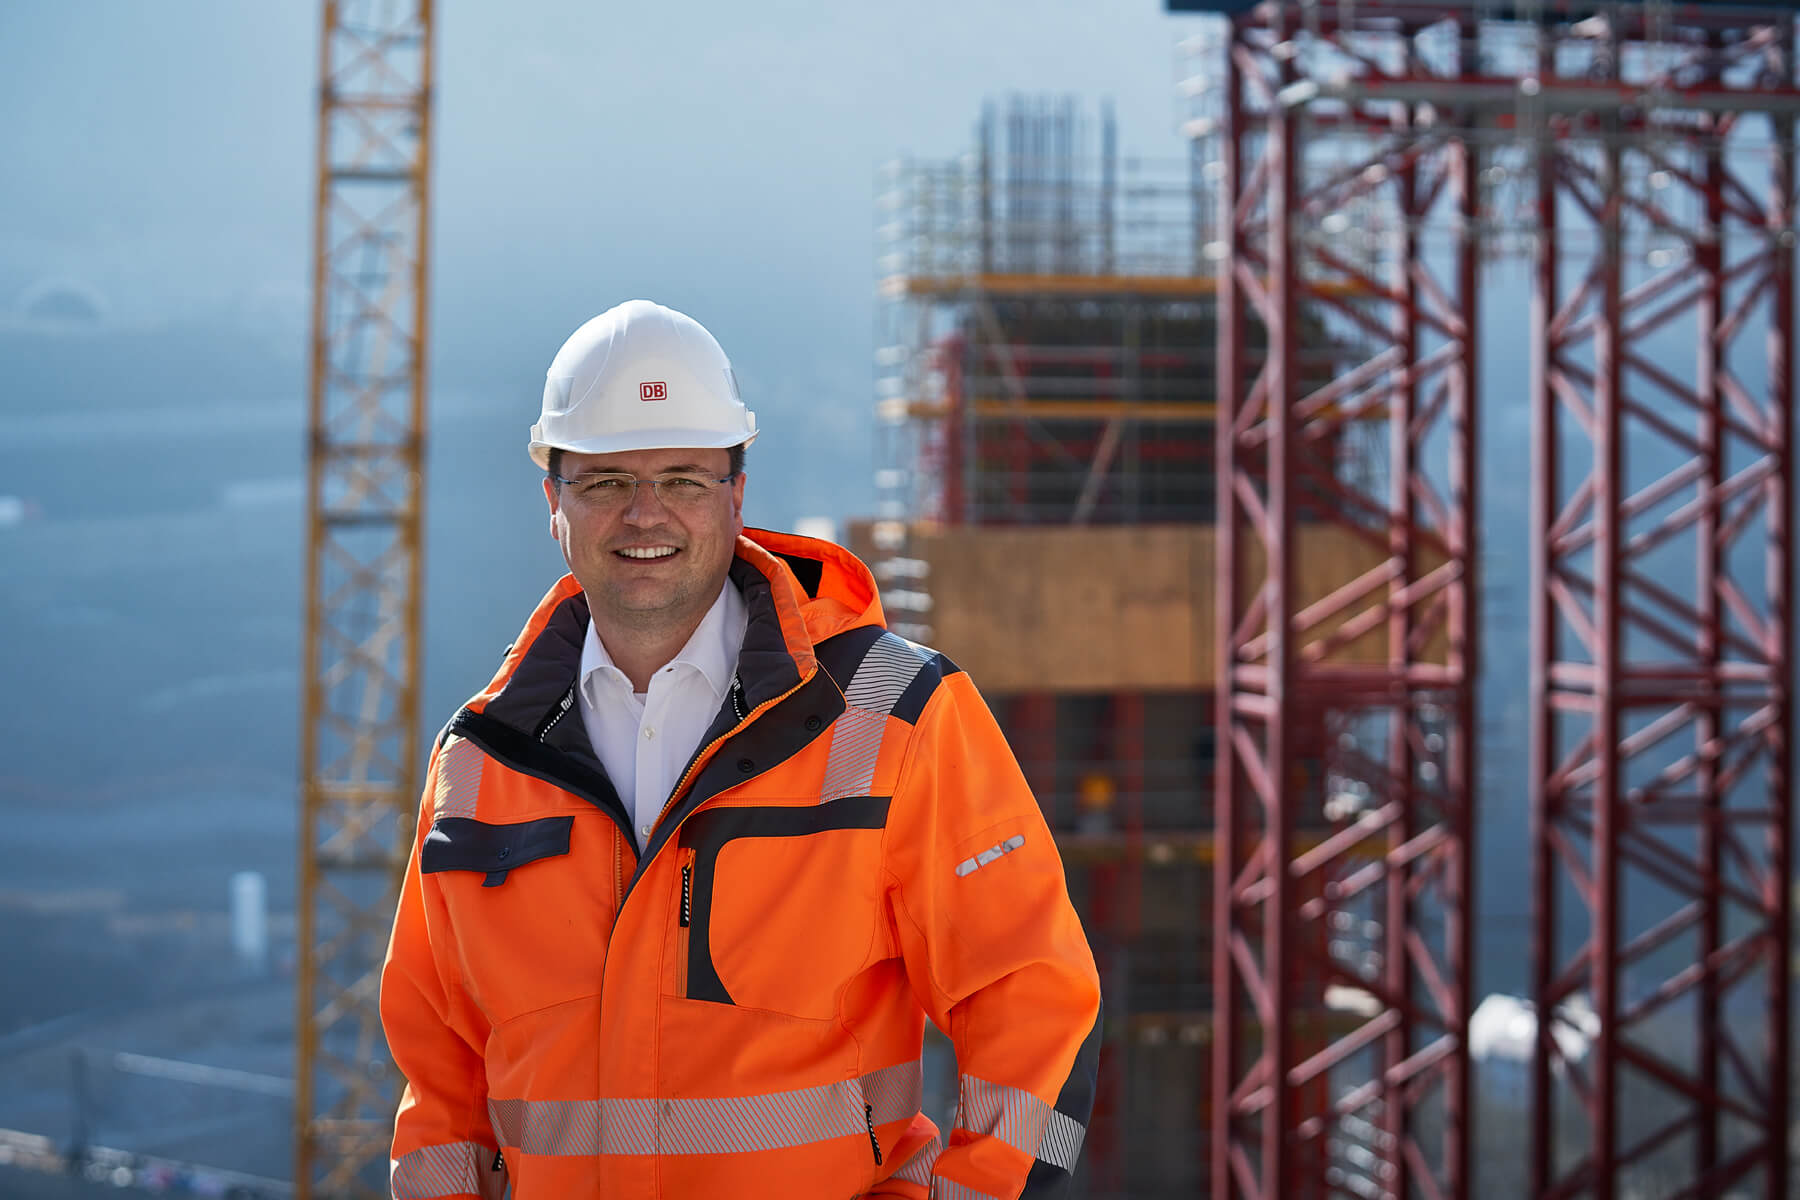 Ein Mann mit Neonfarbener Jacke und Schutzhelm lächelt in die Kamera. Im Hintergrund ist eine Baustelle zu sehen mit Kränen.